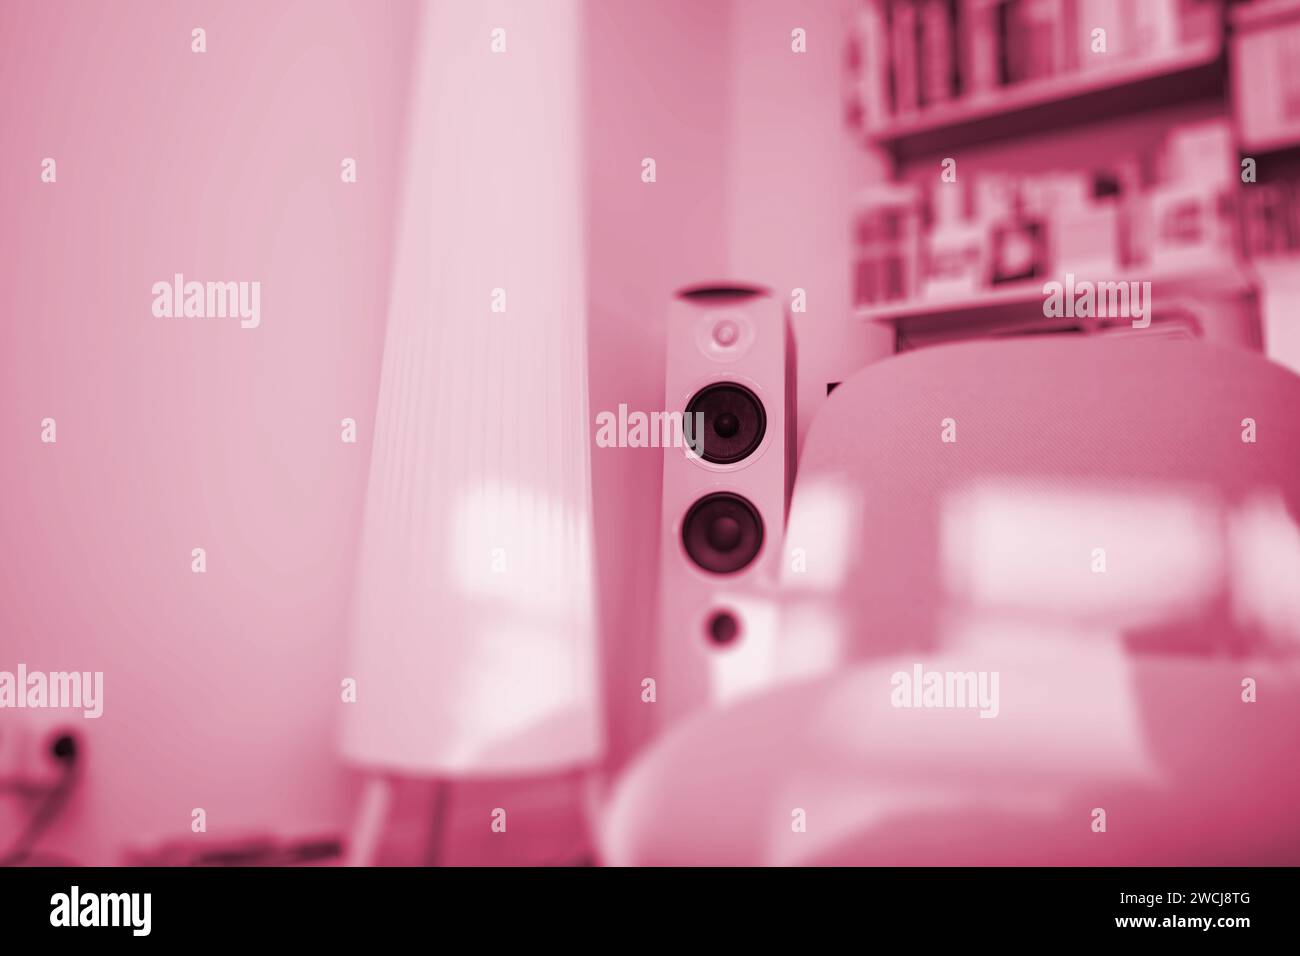 Ein luxuriöses Wohnzimmer in sanften Rosa-Tönen mit großen Lautsprechern und einem eleganten Lampenschirm. Ein Ambiente mit Raffinesse und Stil Stockfoto